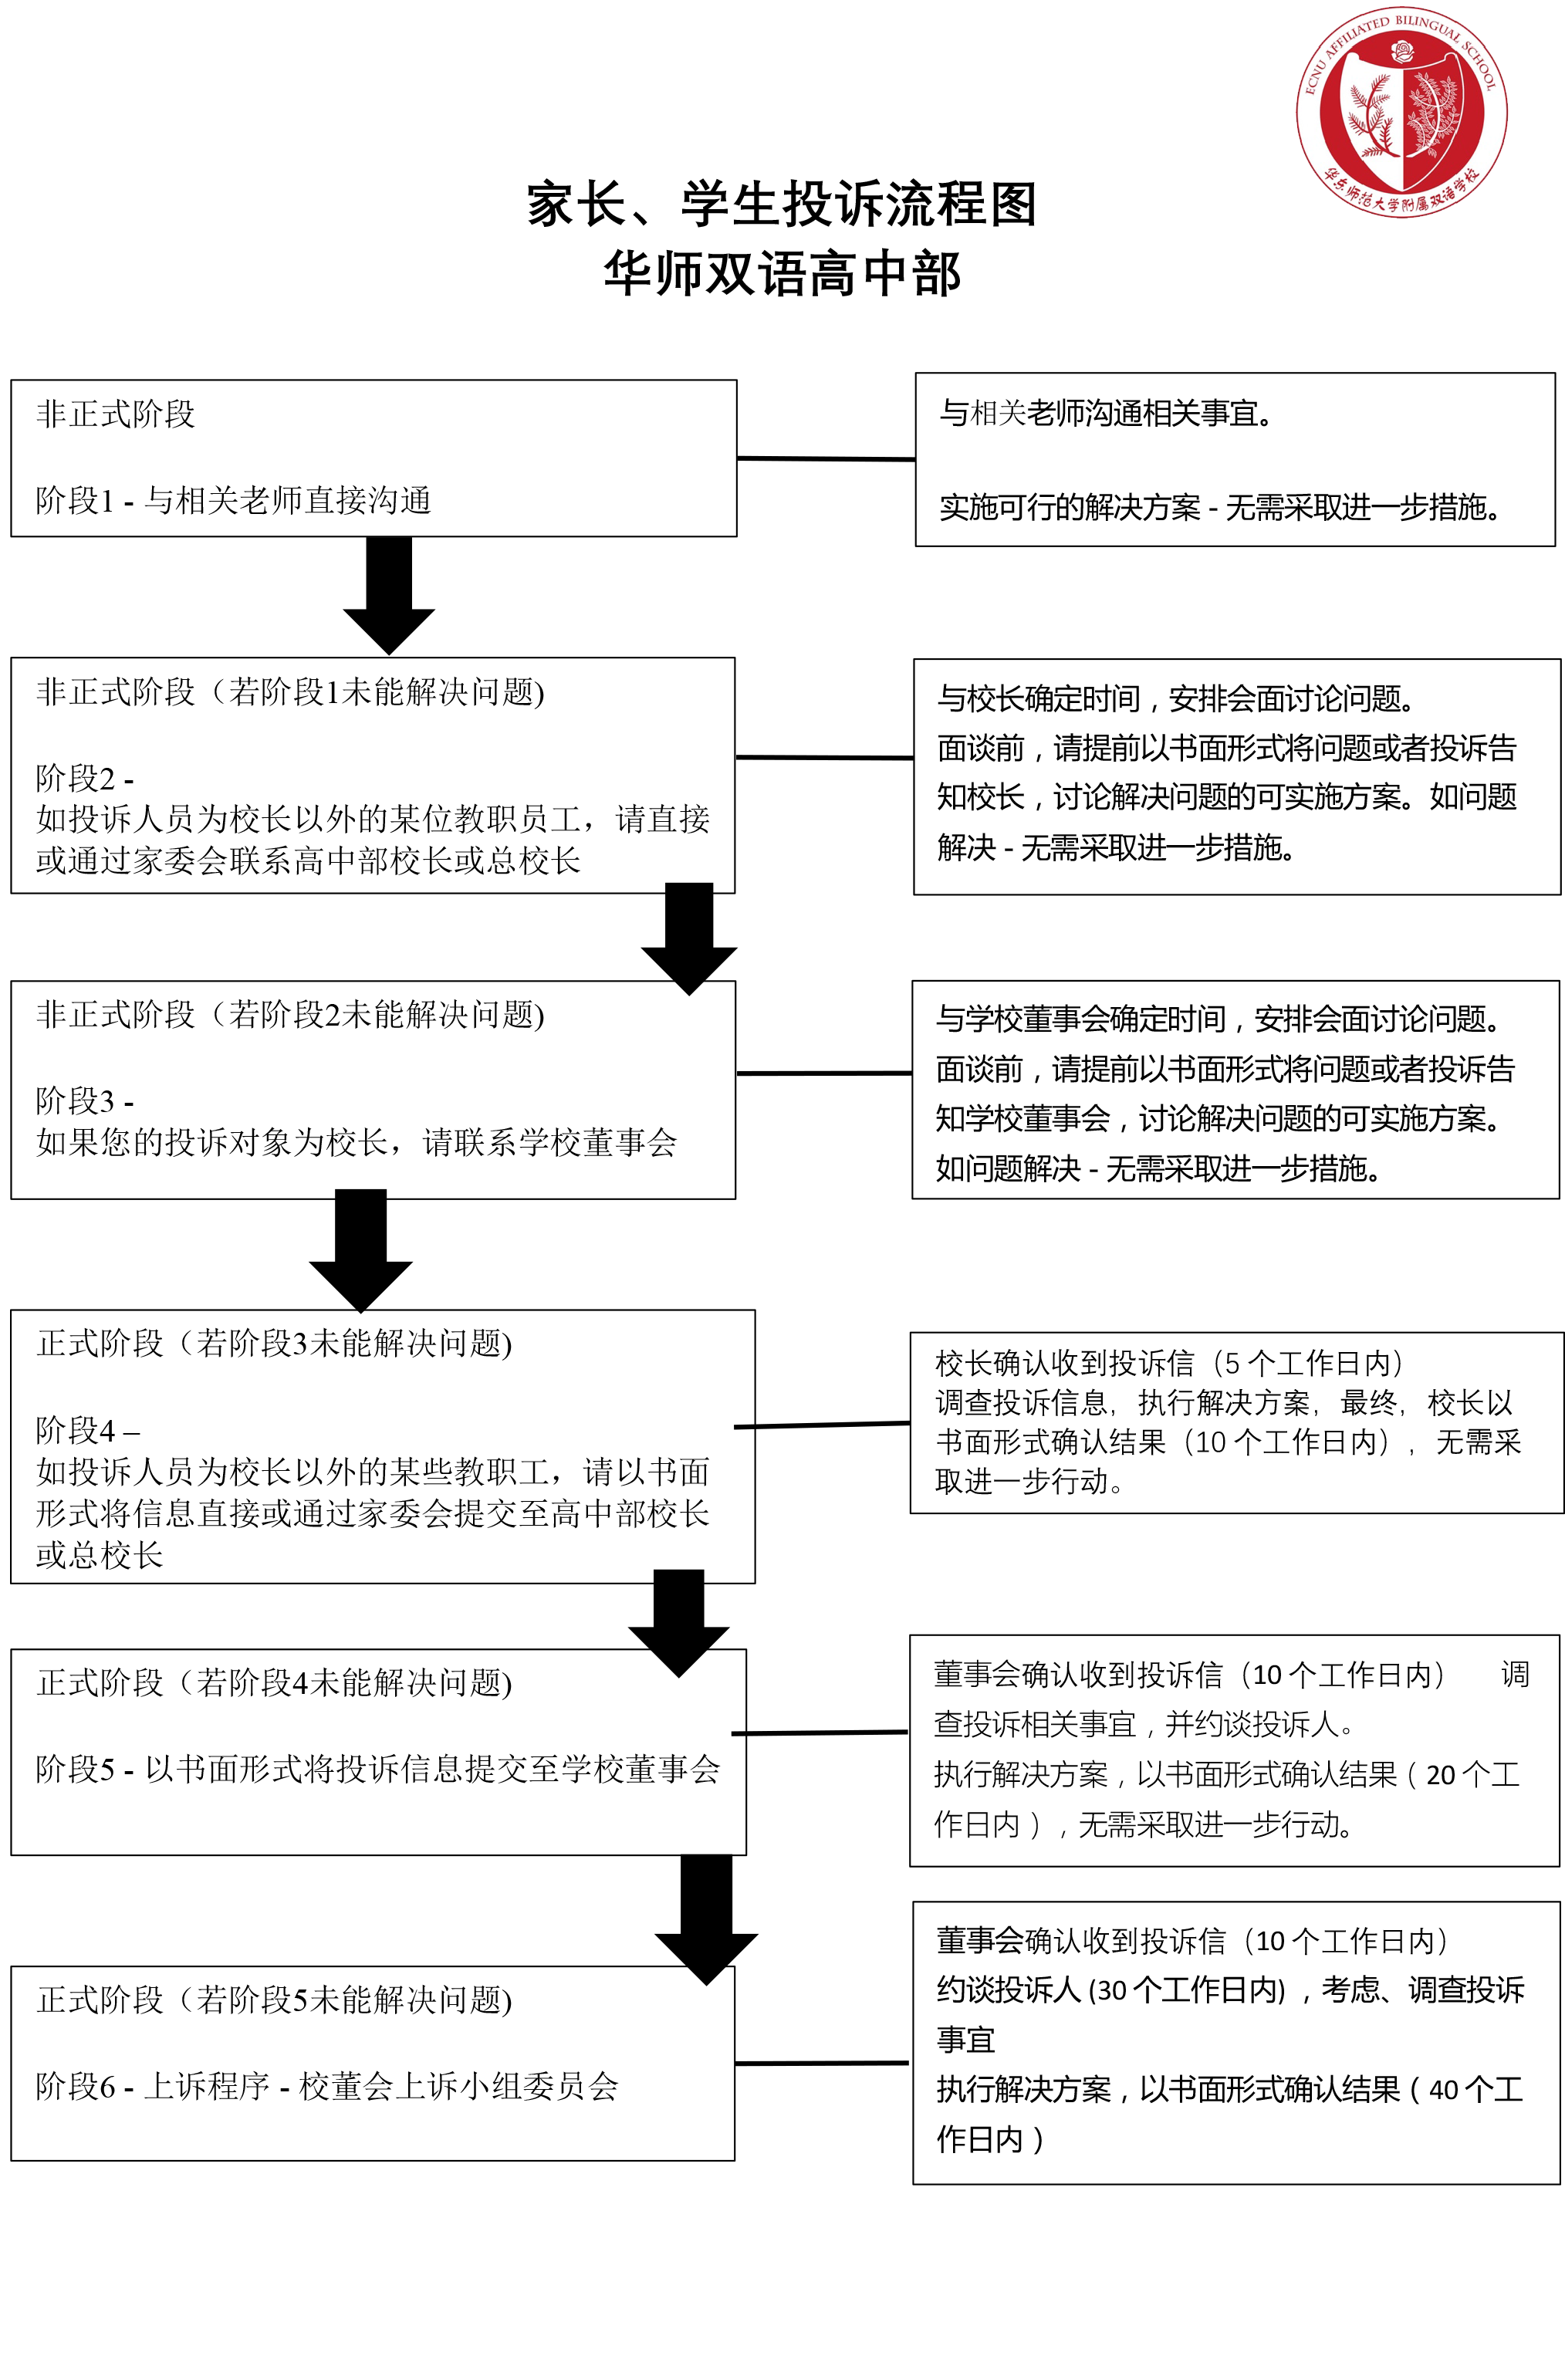 华师双语高中部家长和学生投诉流程.png